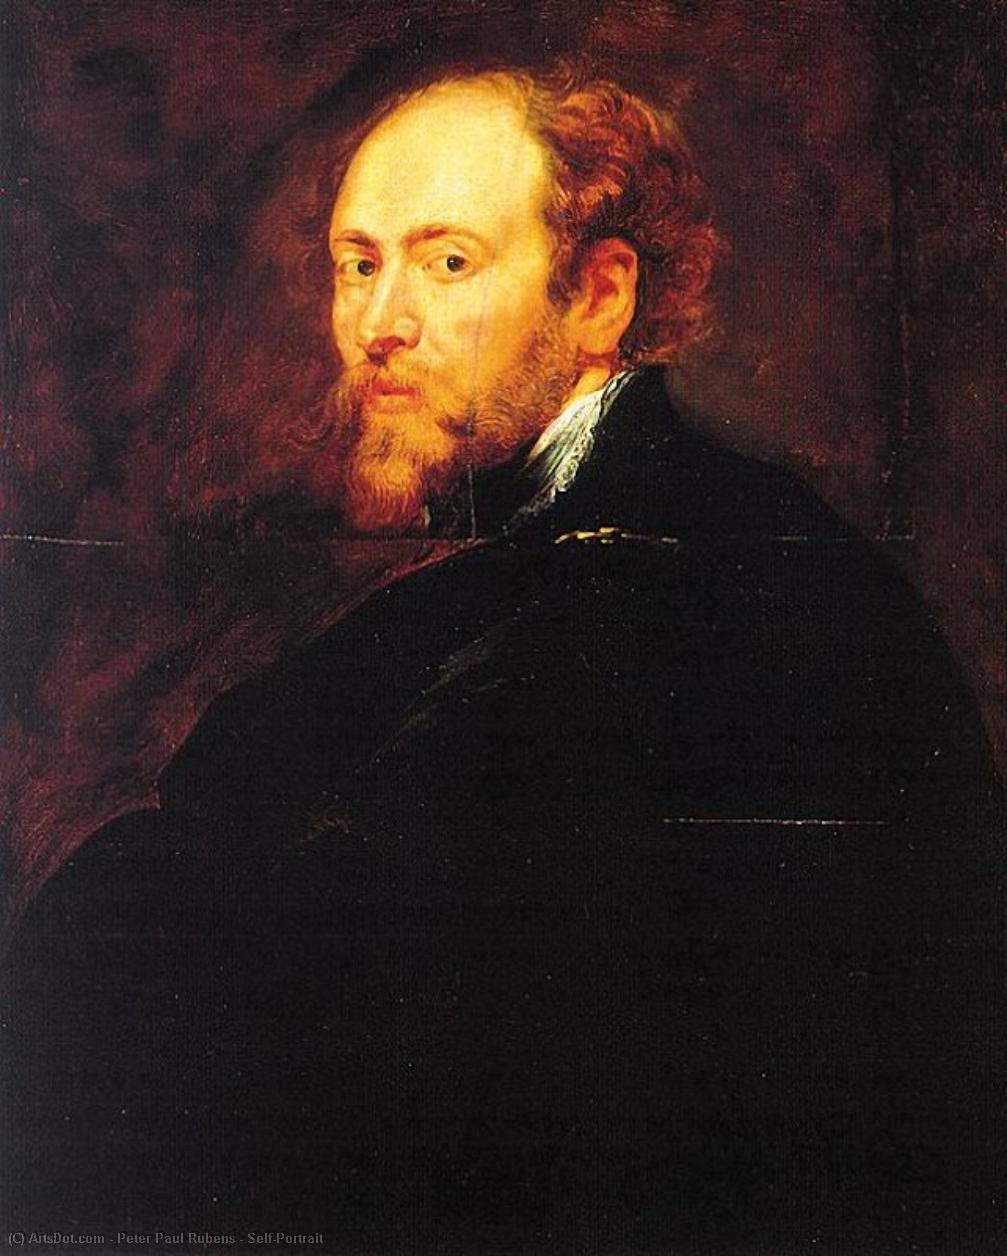 WikiOO.org - Enciclopédia das Belas Artes - Pintura, Arte por Peter Paul Rubens - Self-Portrait